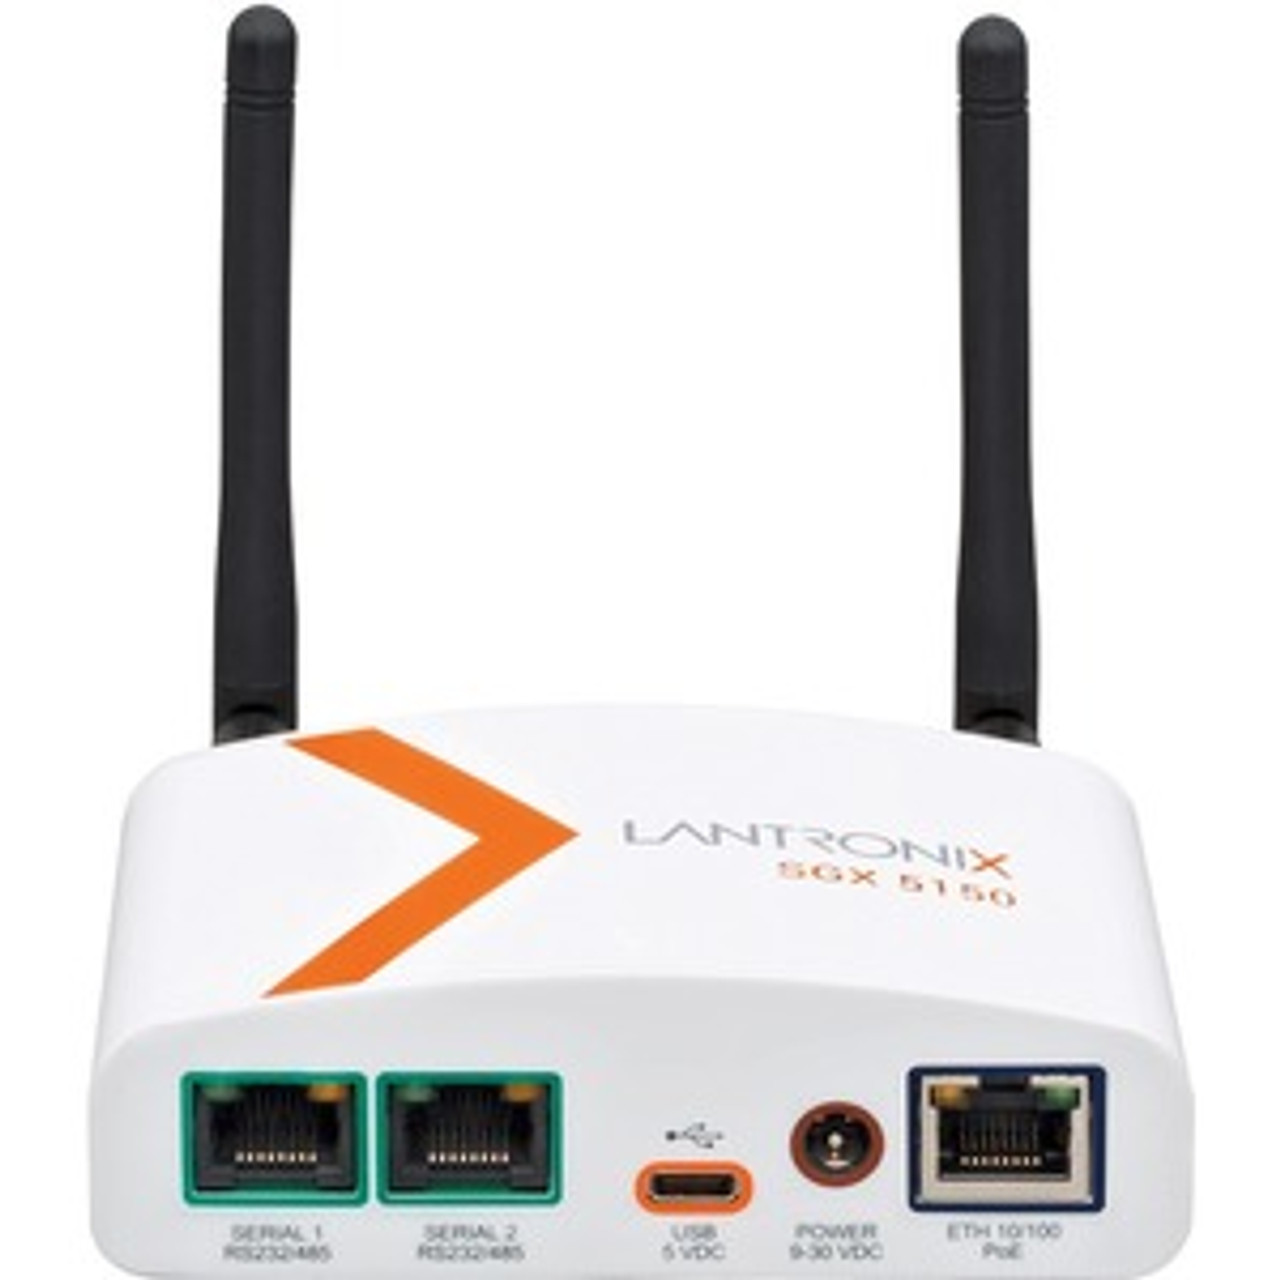 SGX5150205JS Lantronix SGX 5150 IoT Device Gateway Dual Band 802.11a/b/g/n/ac desktop wireless Router (Refurbished)